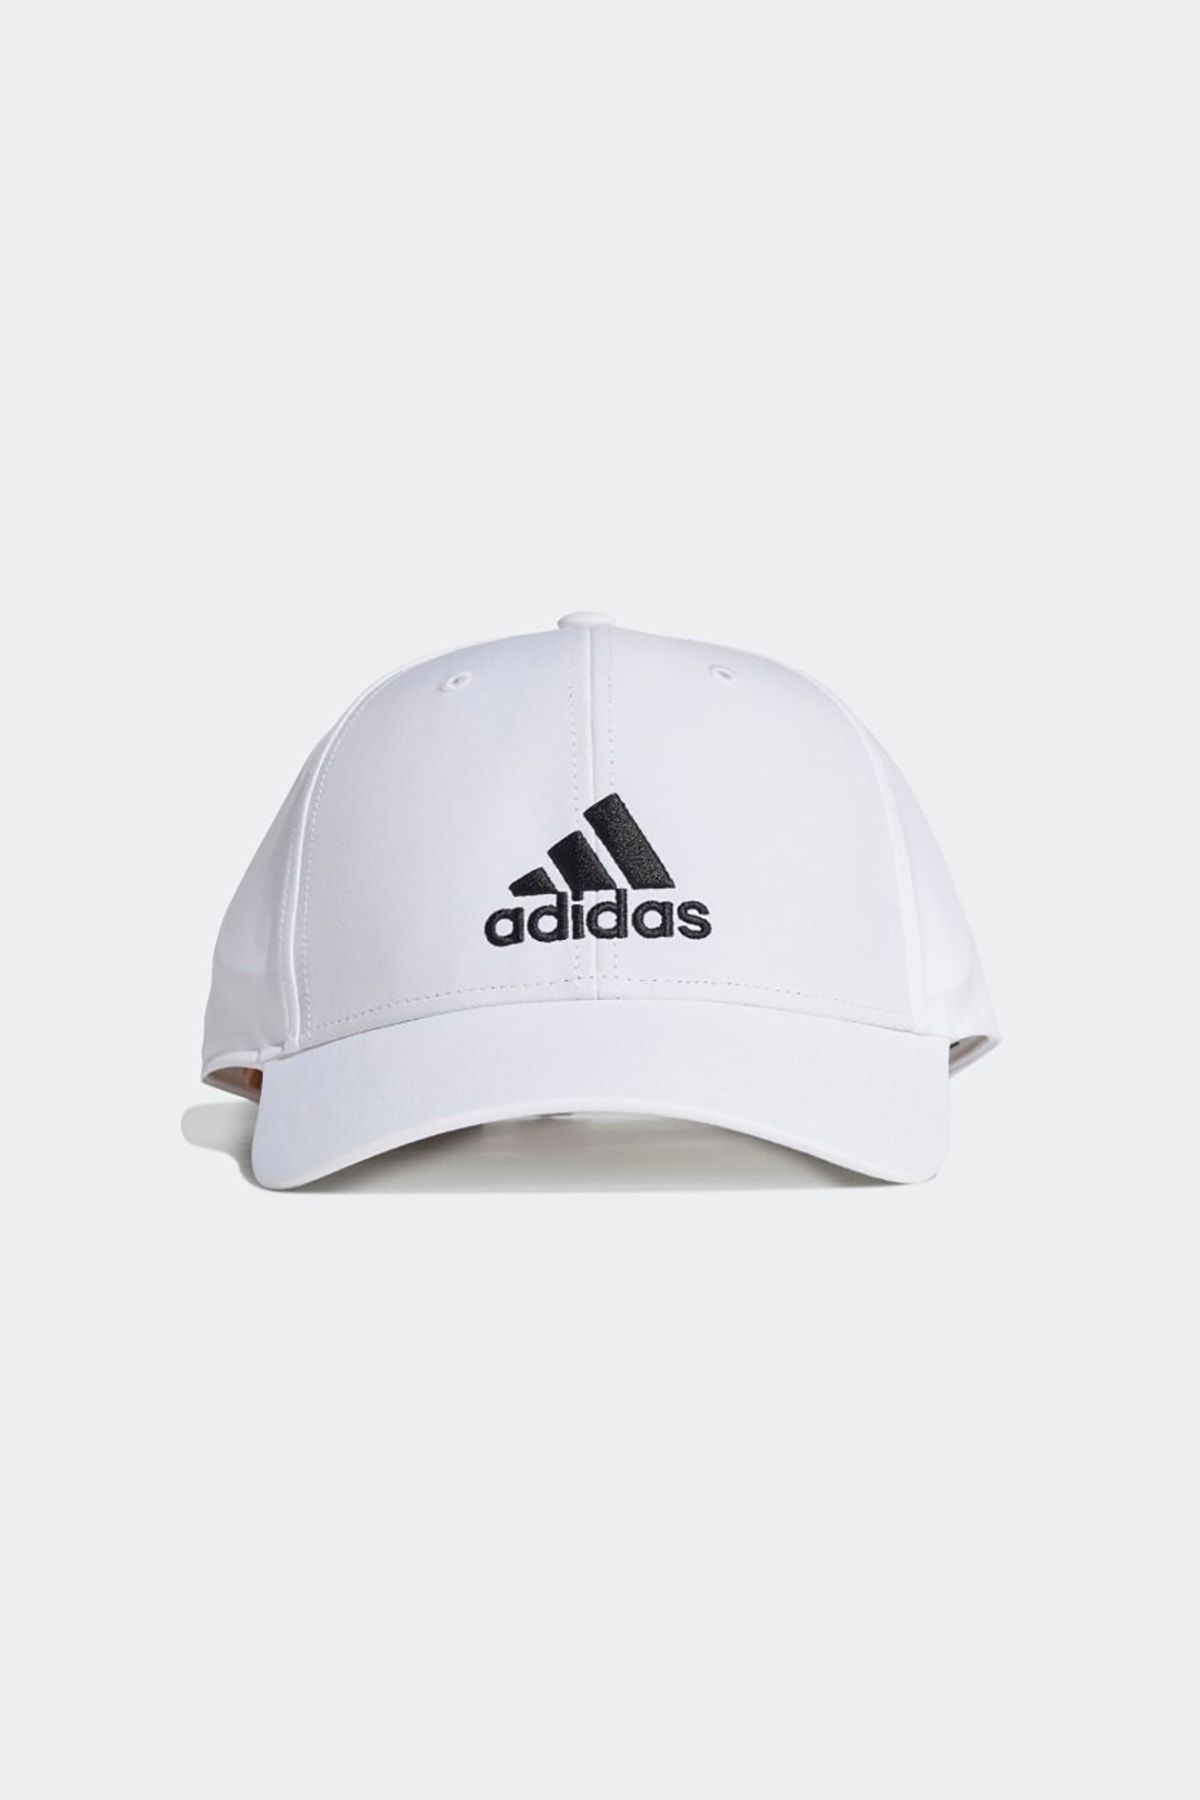 adidas Gm6260 Bballcap Lt Emb Beyaz Unisex Şapka